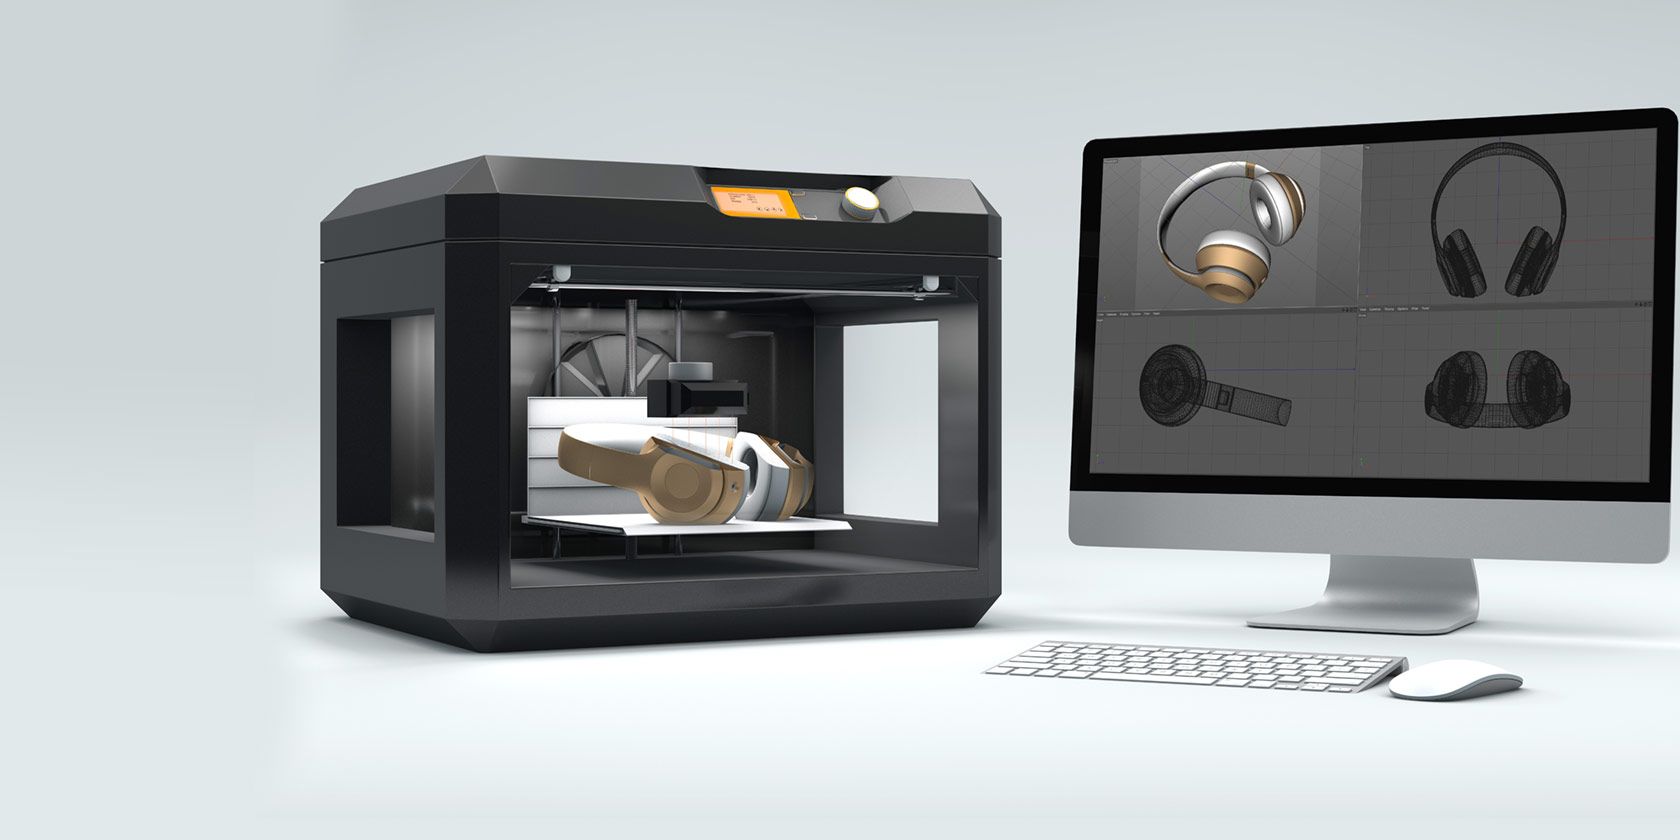 The Best 3D Printers Under $500 in 2019 - Best 3Dprinter